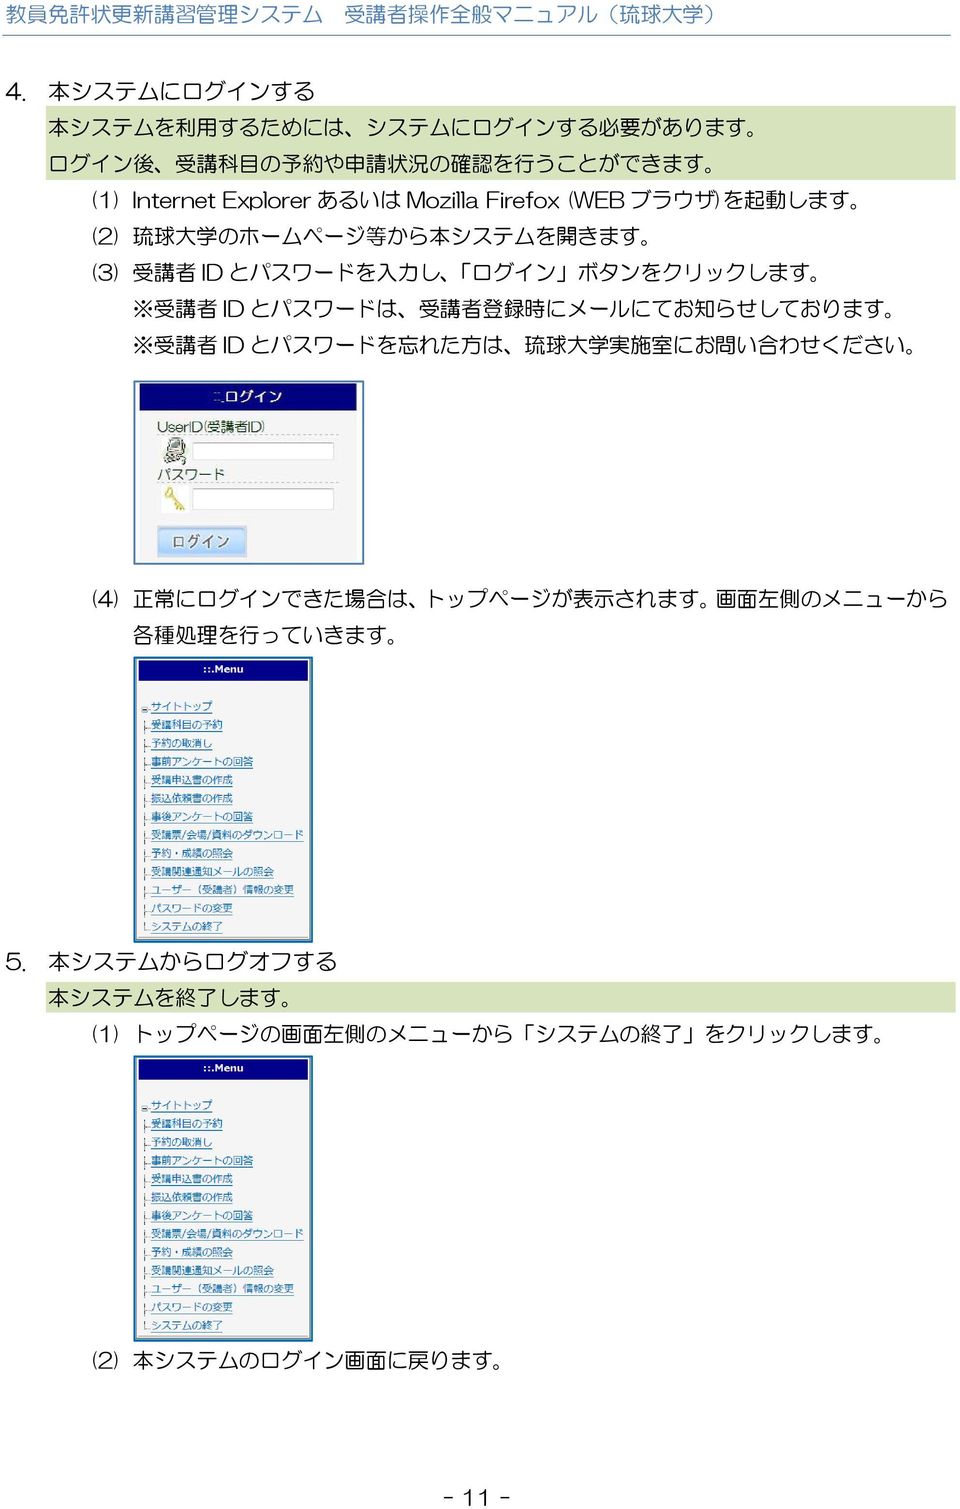 受 講 者 登 録 時 にメールにてお 知 らせしております 受 講 者 ID とパスワードを 忘 れた 方 は 琉 球 大 学 実 施 室 にお 問 い 合 わせください (4) 正 常 にログインできた 場 合 は トップページが 表 示 されます 画 面 左 側